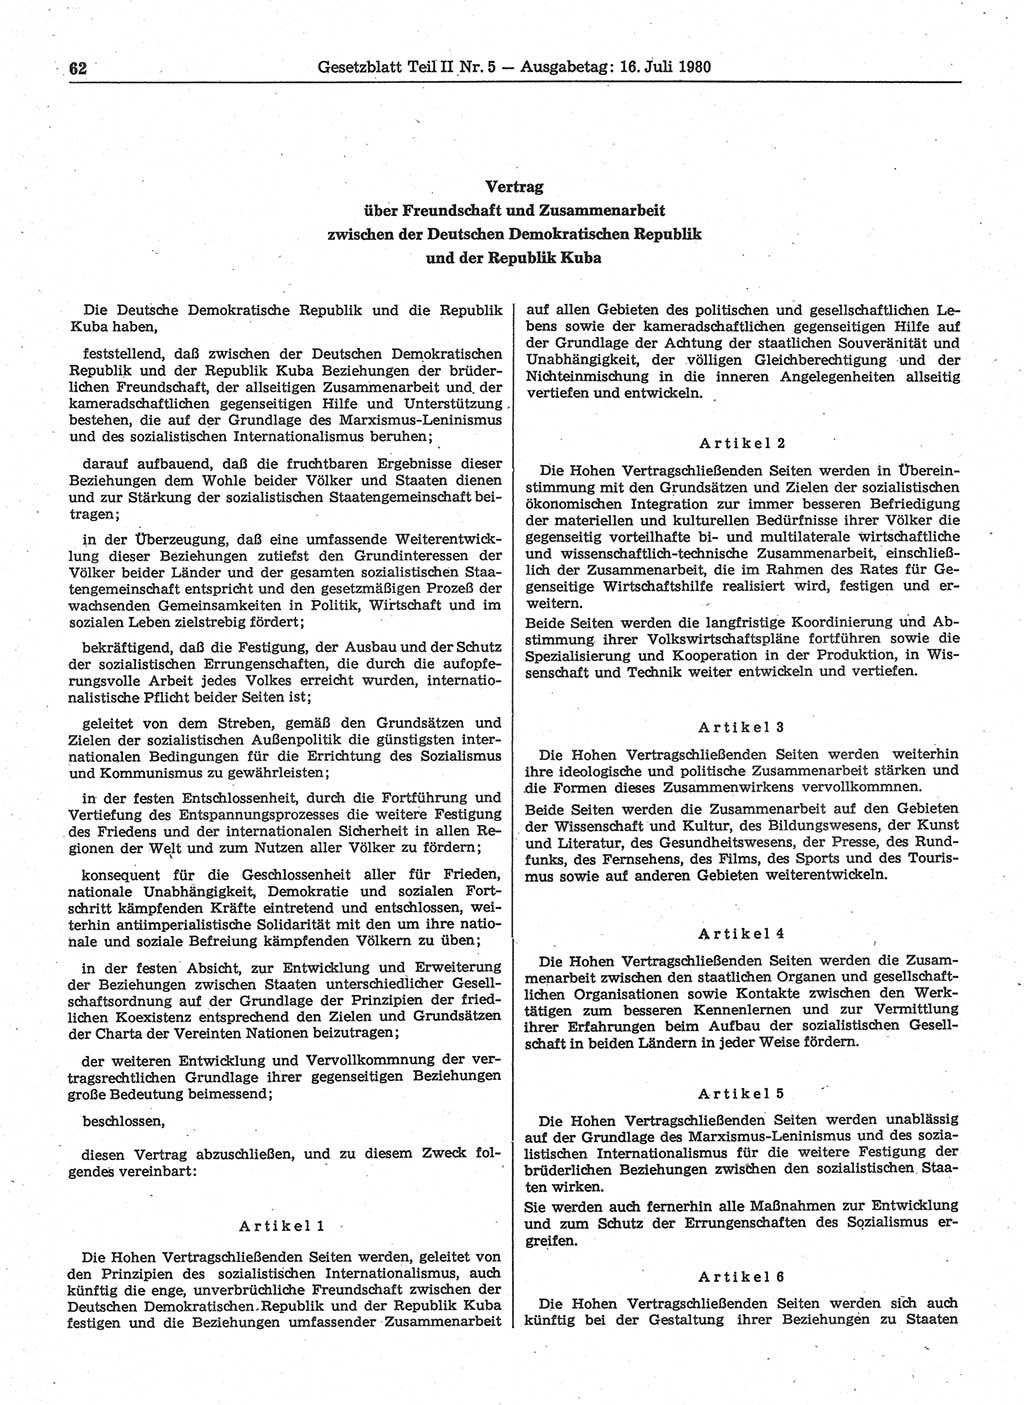 Gesetzblatt (GBl.) der Deutschen Demokratischen Republik (DDR) Teil ⅠⅠ 1980, Seite 62 (GBl. DDR ⅠⅠ 1980, S. 62)